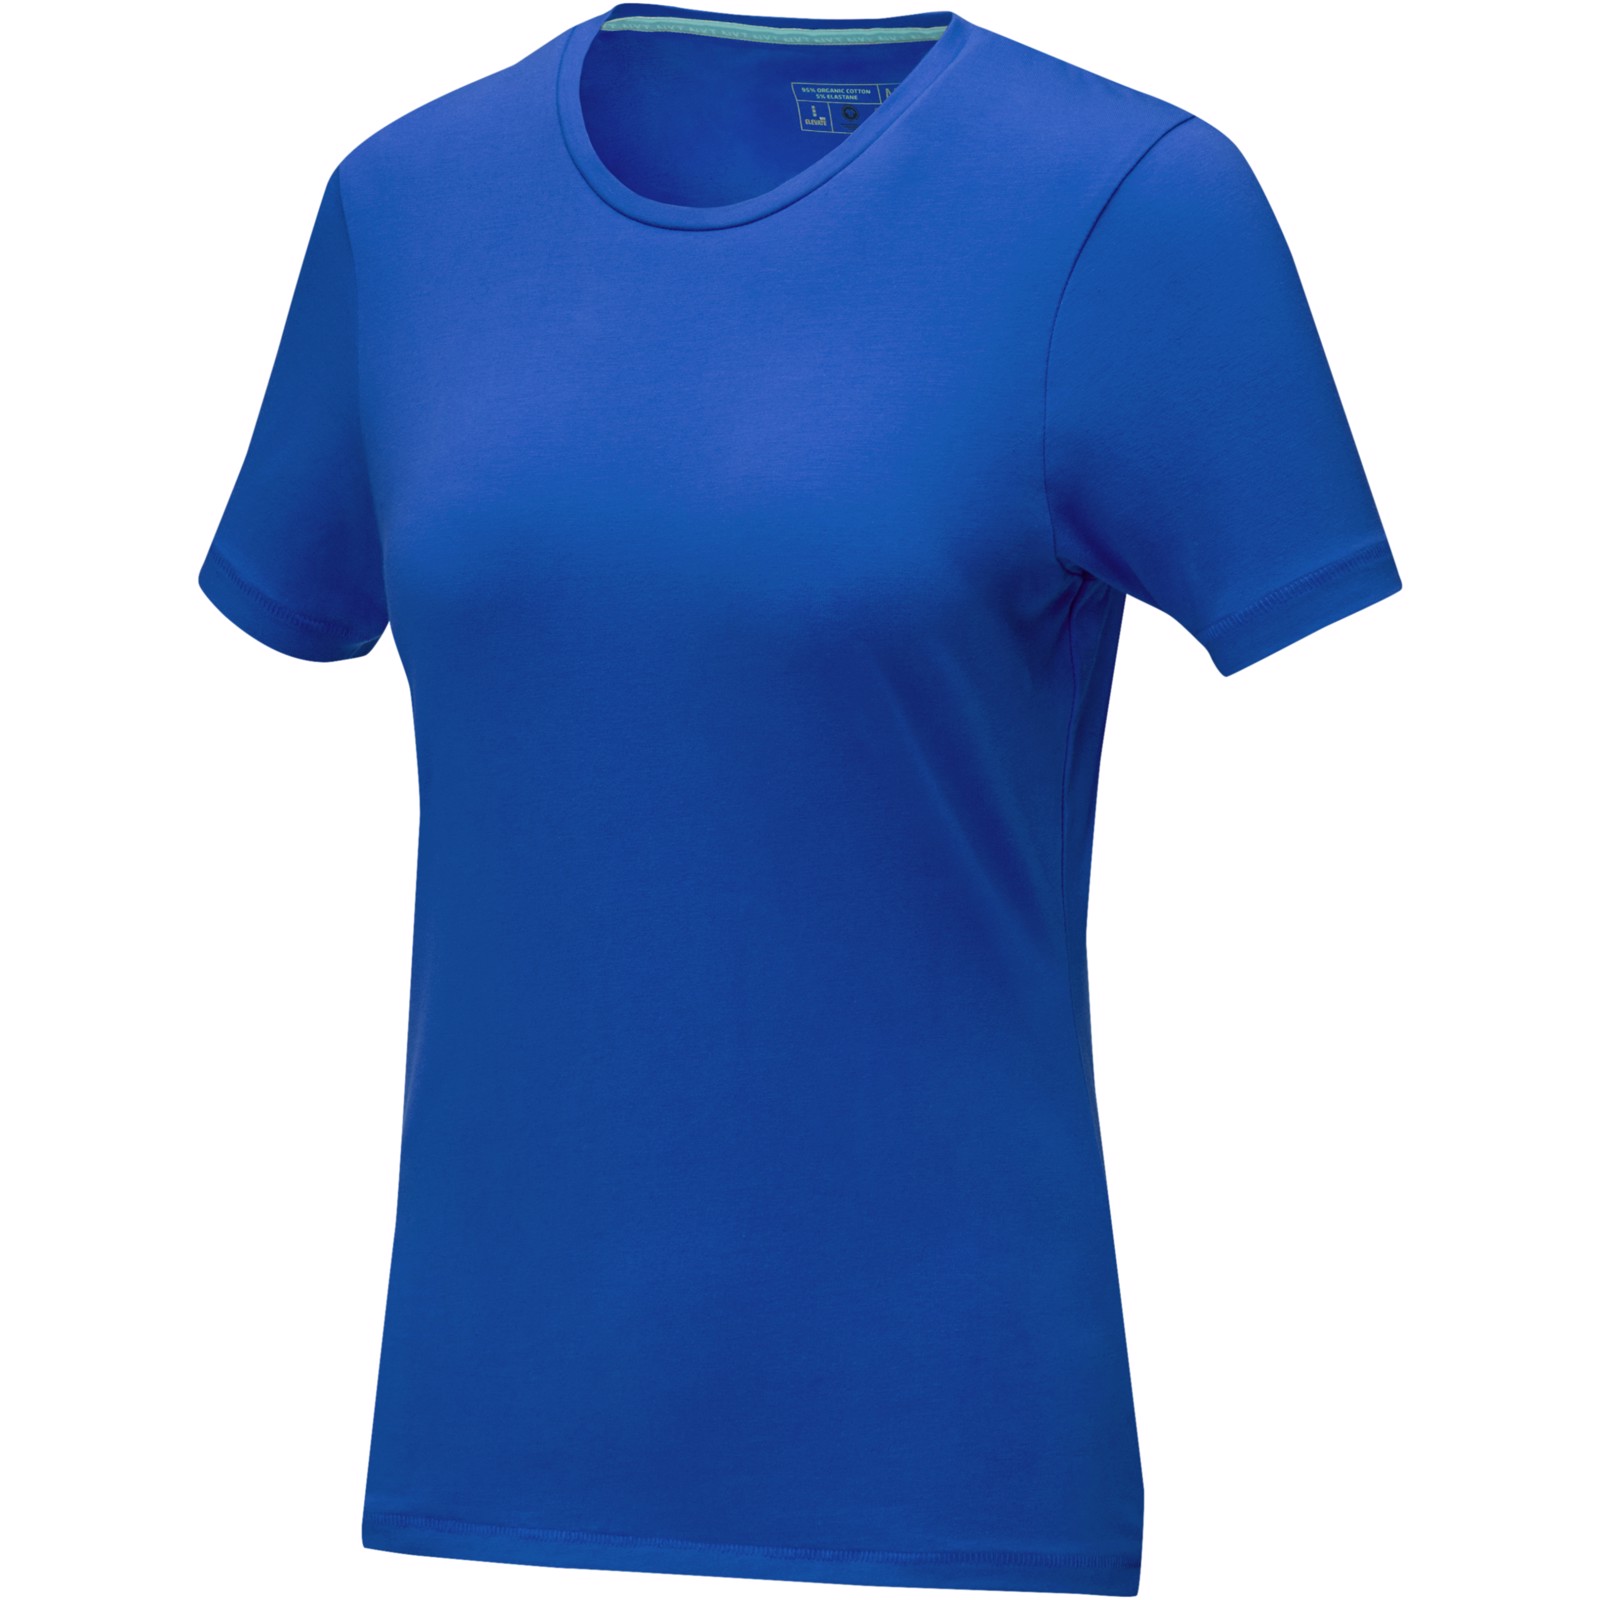 Balfour short sleeve women's GOTS organic t-shirt - Blue / XS